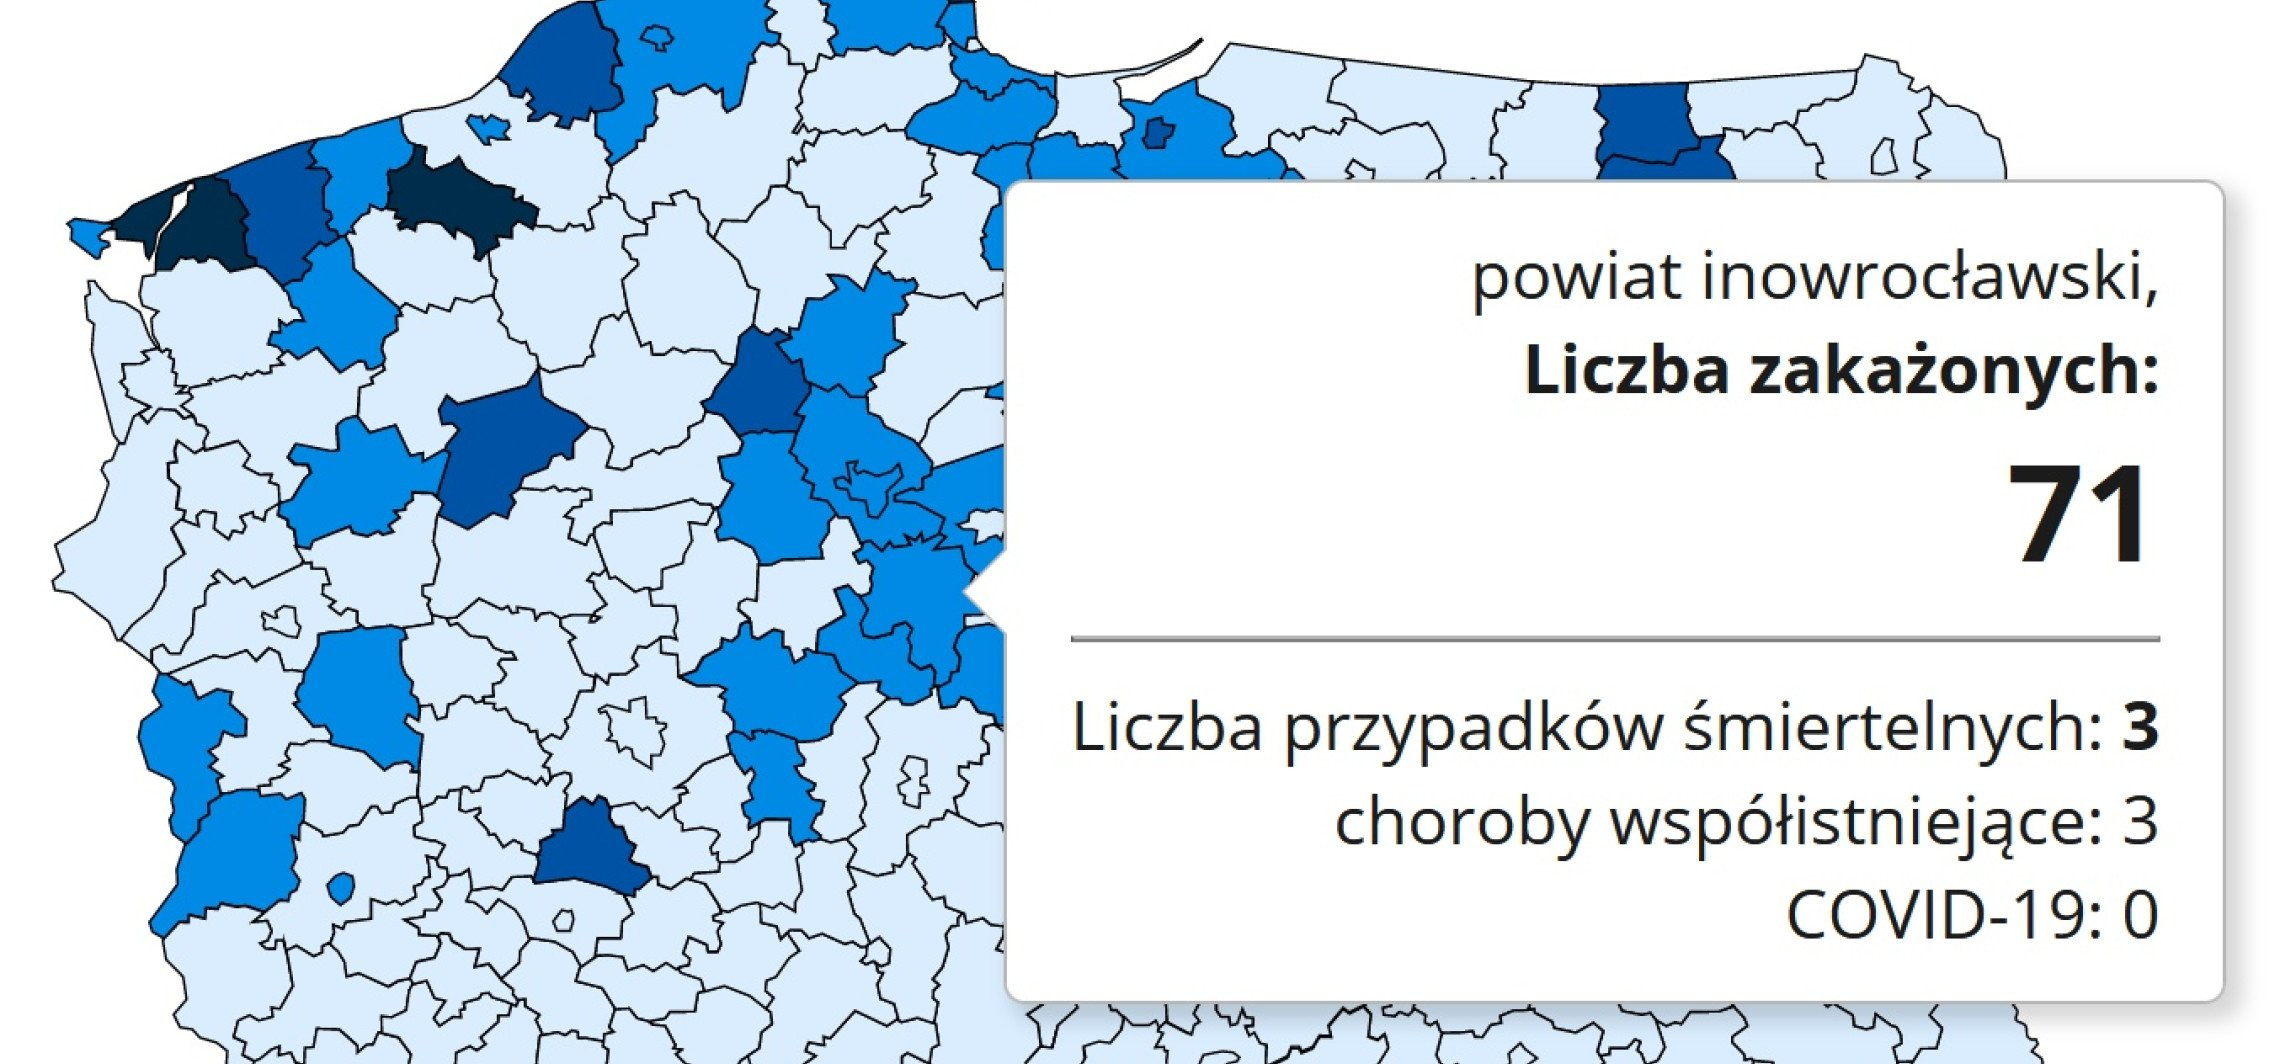 Inowrocław - Koronawirus. Wzrost zakażeń w naszym regionie